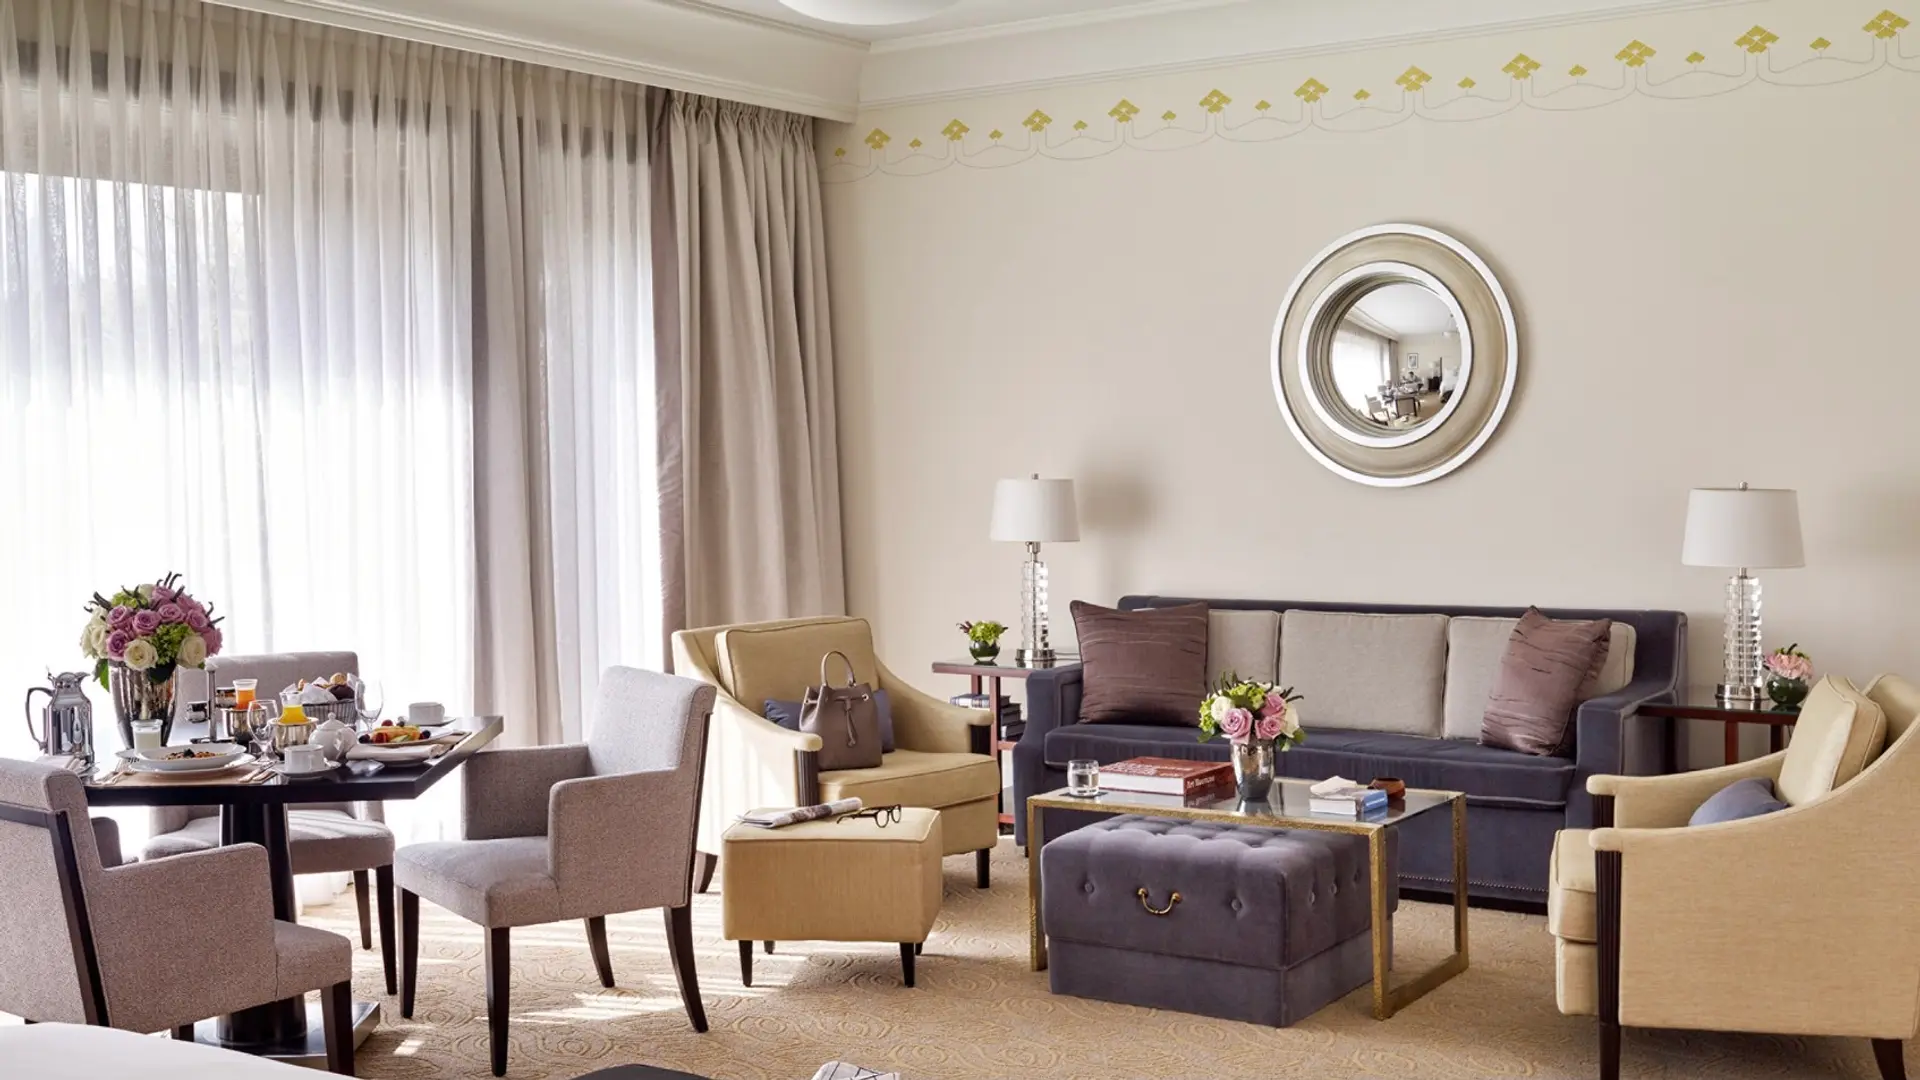 Hotel review Accommodation' - Four Seasons Hotel Gresham Palace Budapest - 5